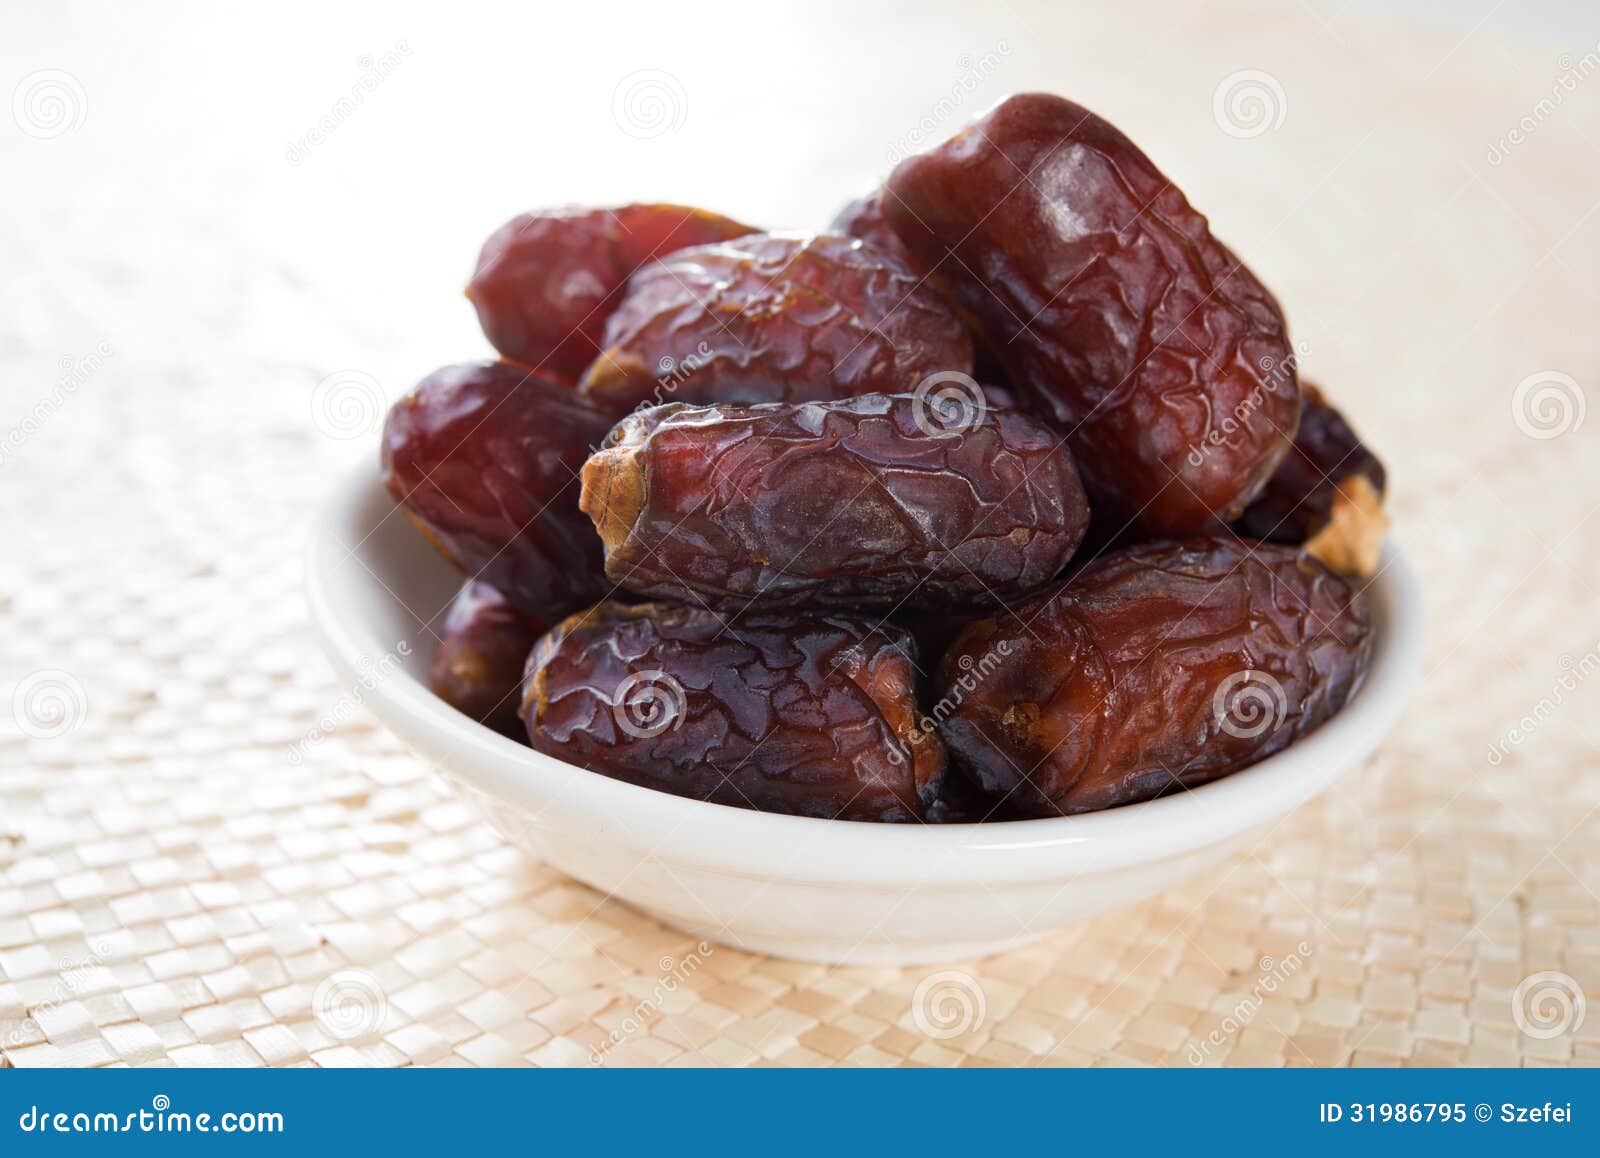 dried  fruits, kurma Kurma fasting date palm food eaten in fresh   which ramadan